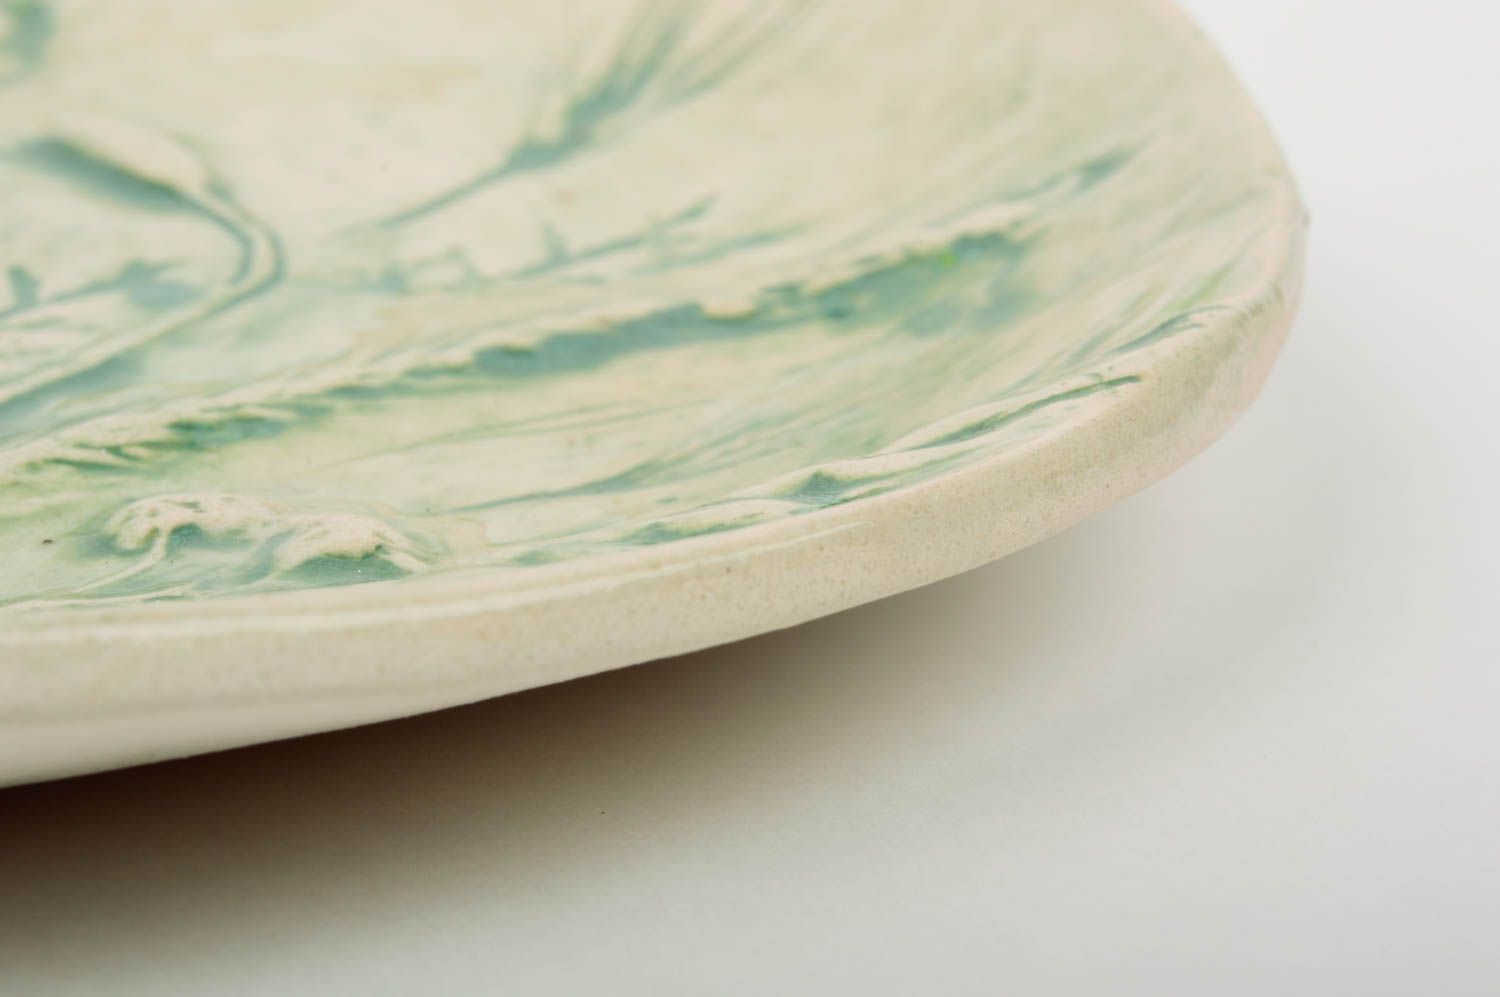 Plato de barro artículo de cerámica regalo original hecho a mano con ornamentos foto 5